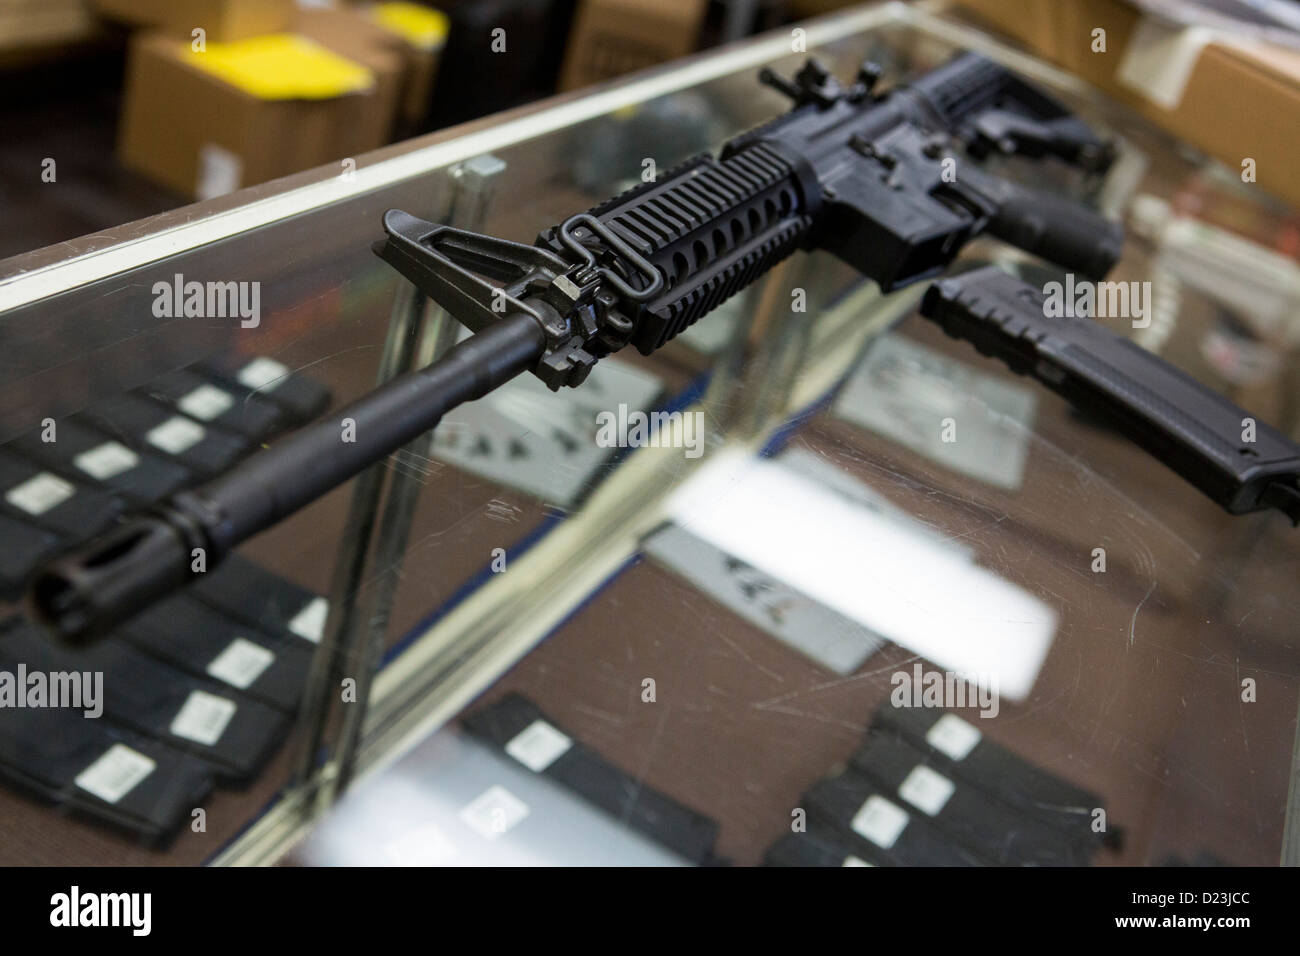 Ein Colt Defense M4A1 Karabiner Sturmgewehr auf dem Display auf ein Waffengeschäft mit hoher Kapazität 30 Runde Zeitschriften. Stockfoto